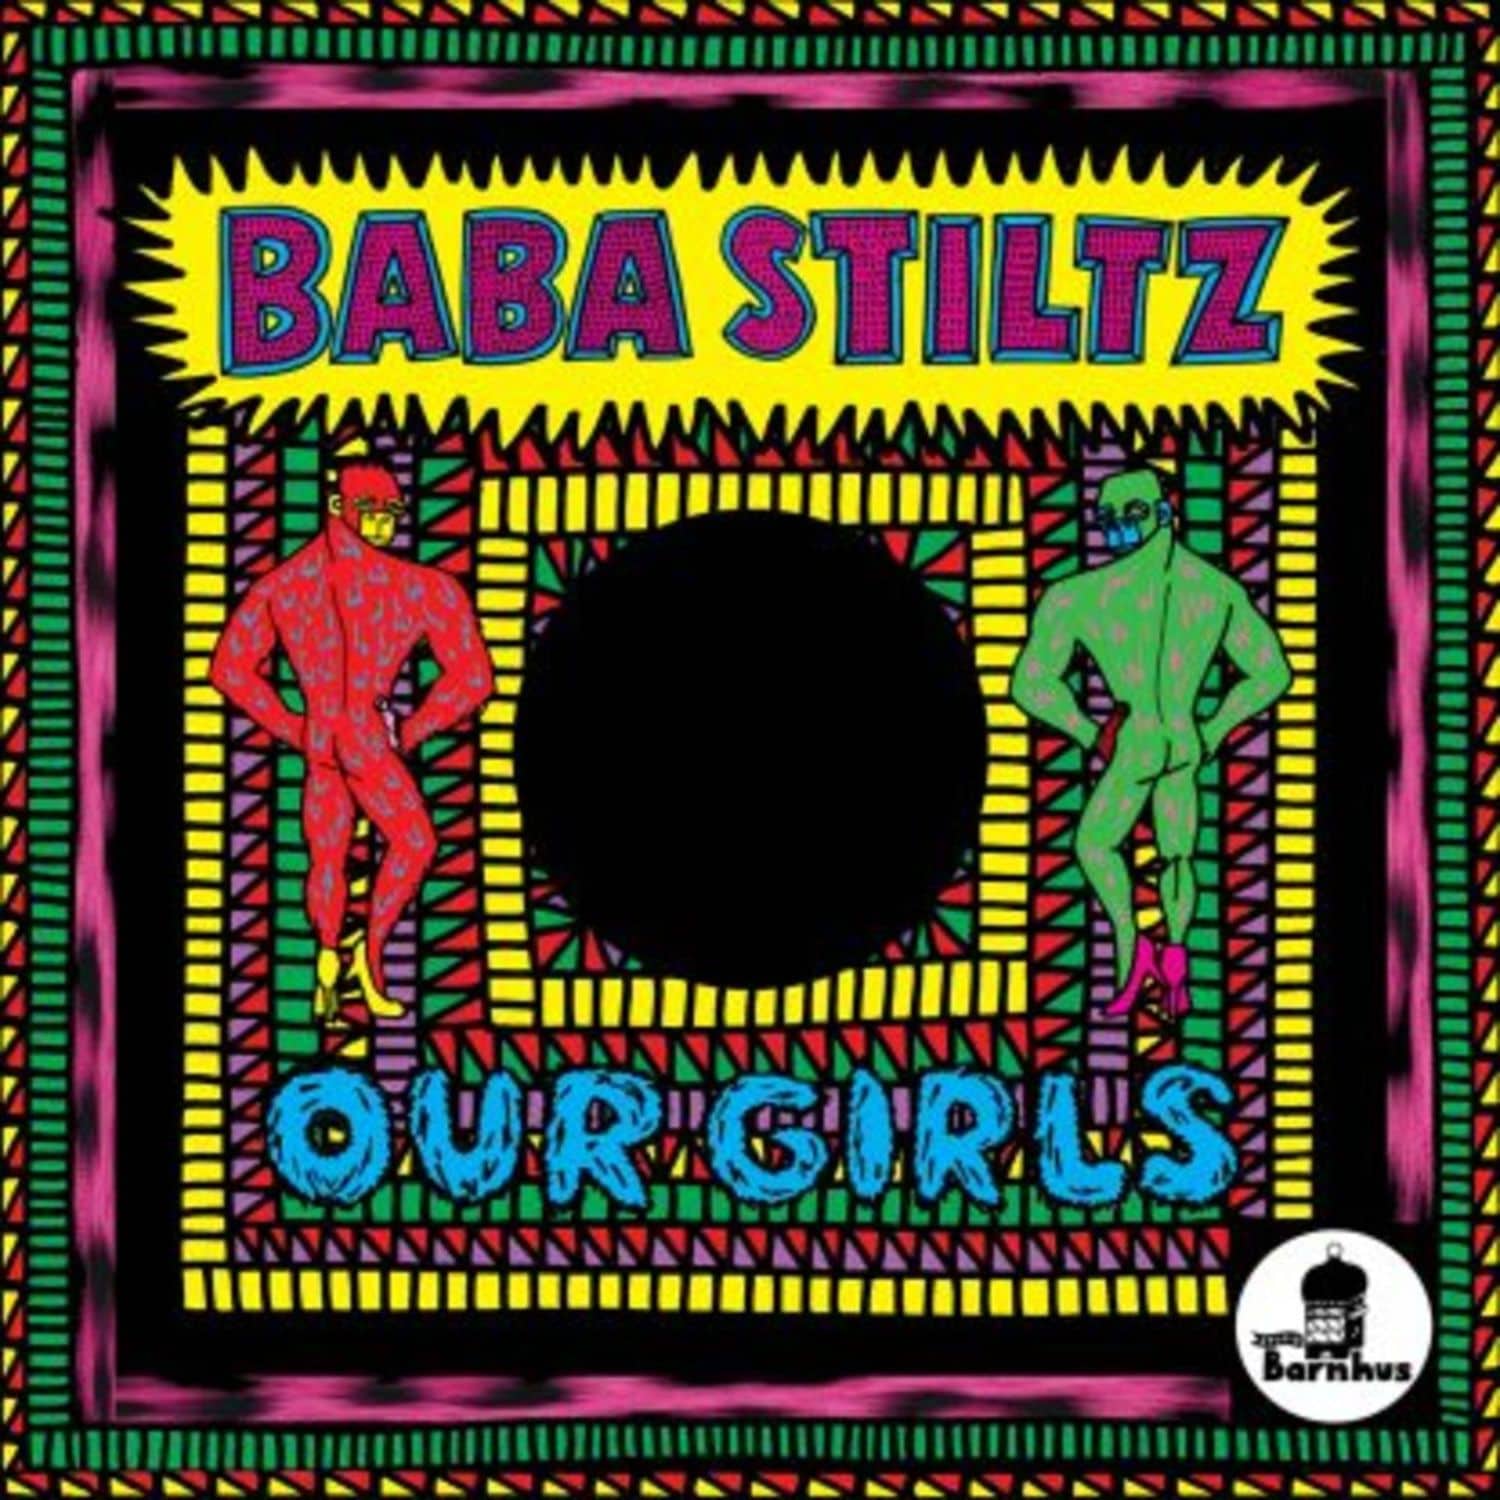 Baba Stiltz - OUR GIRLS